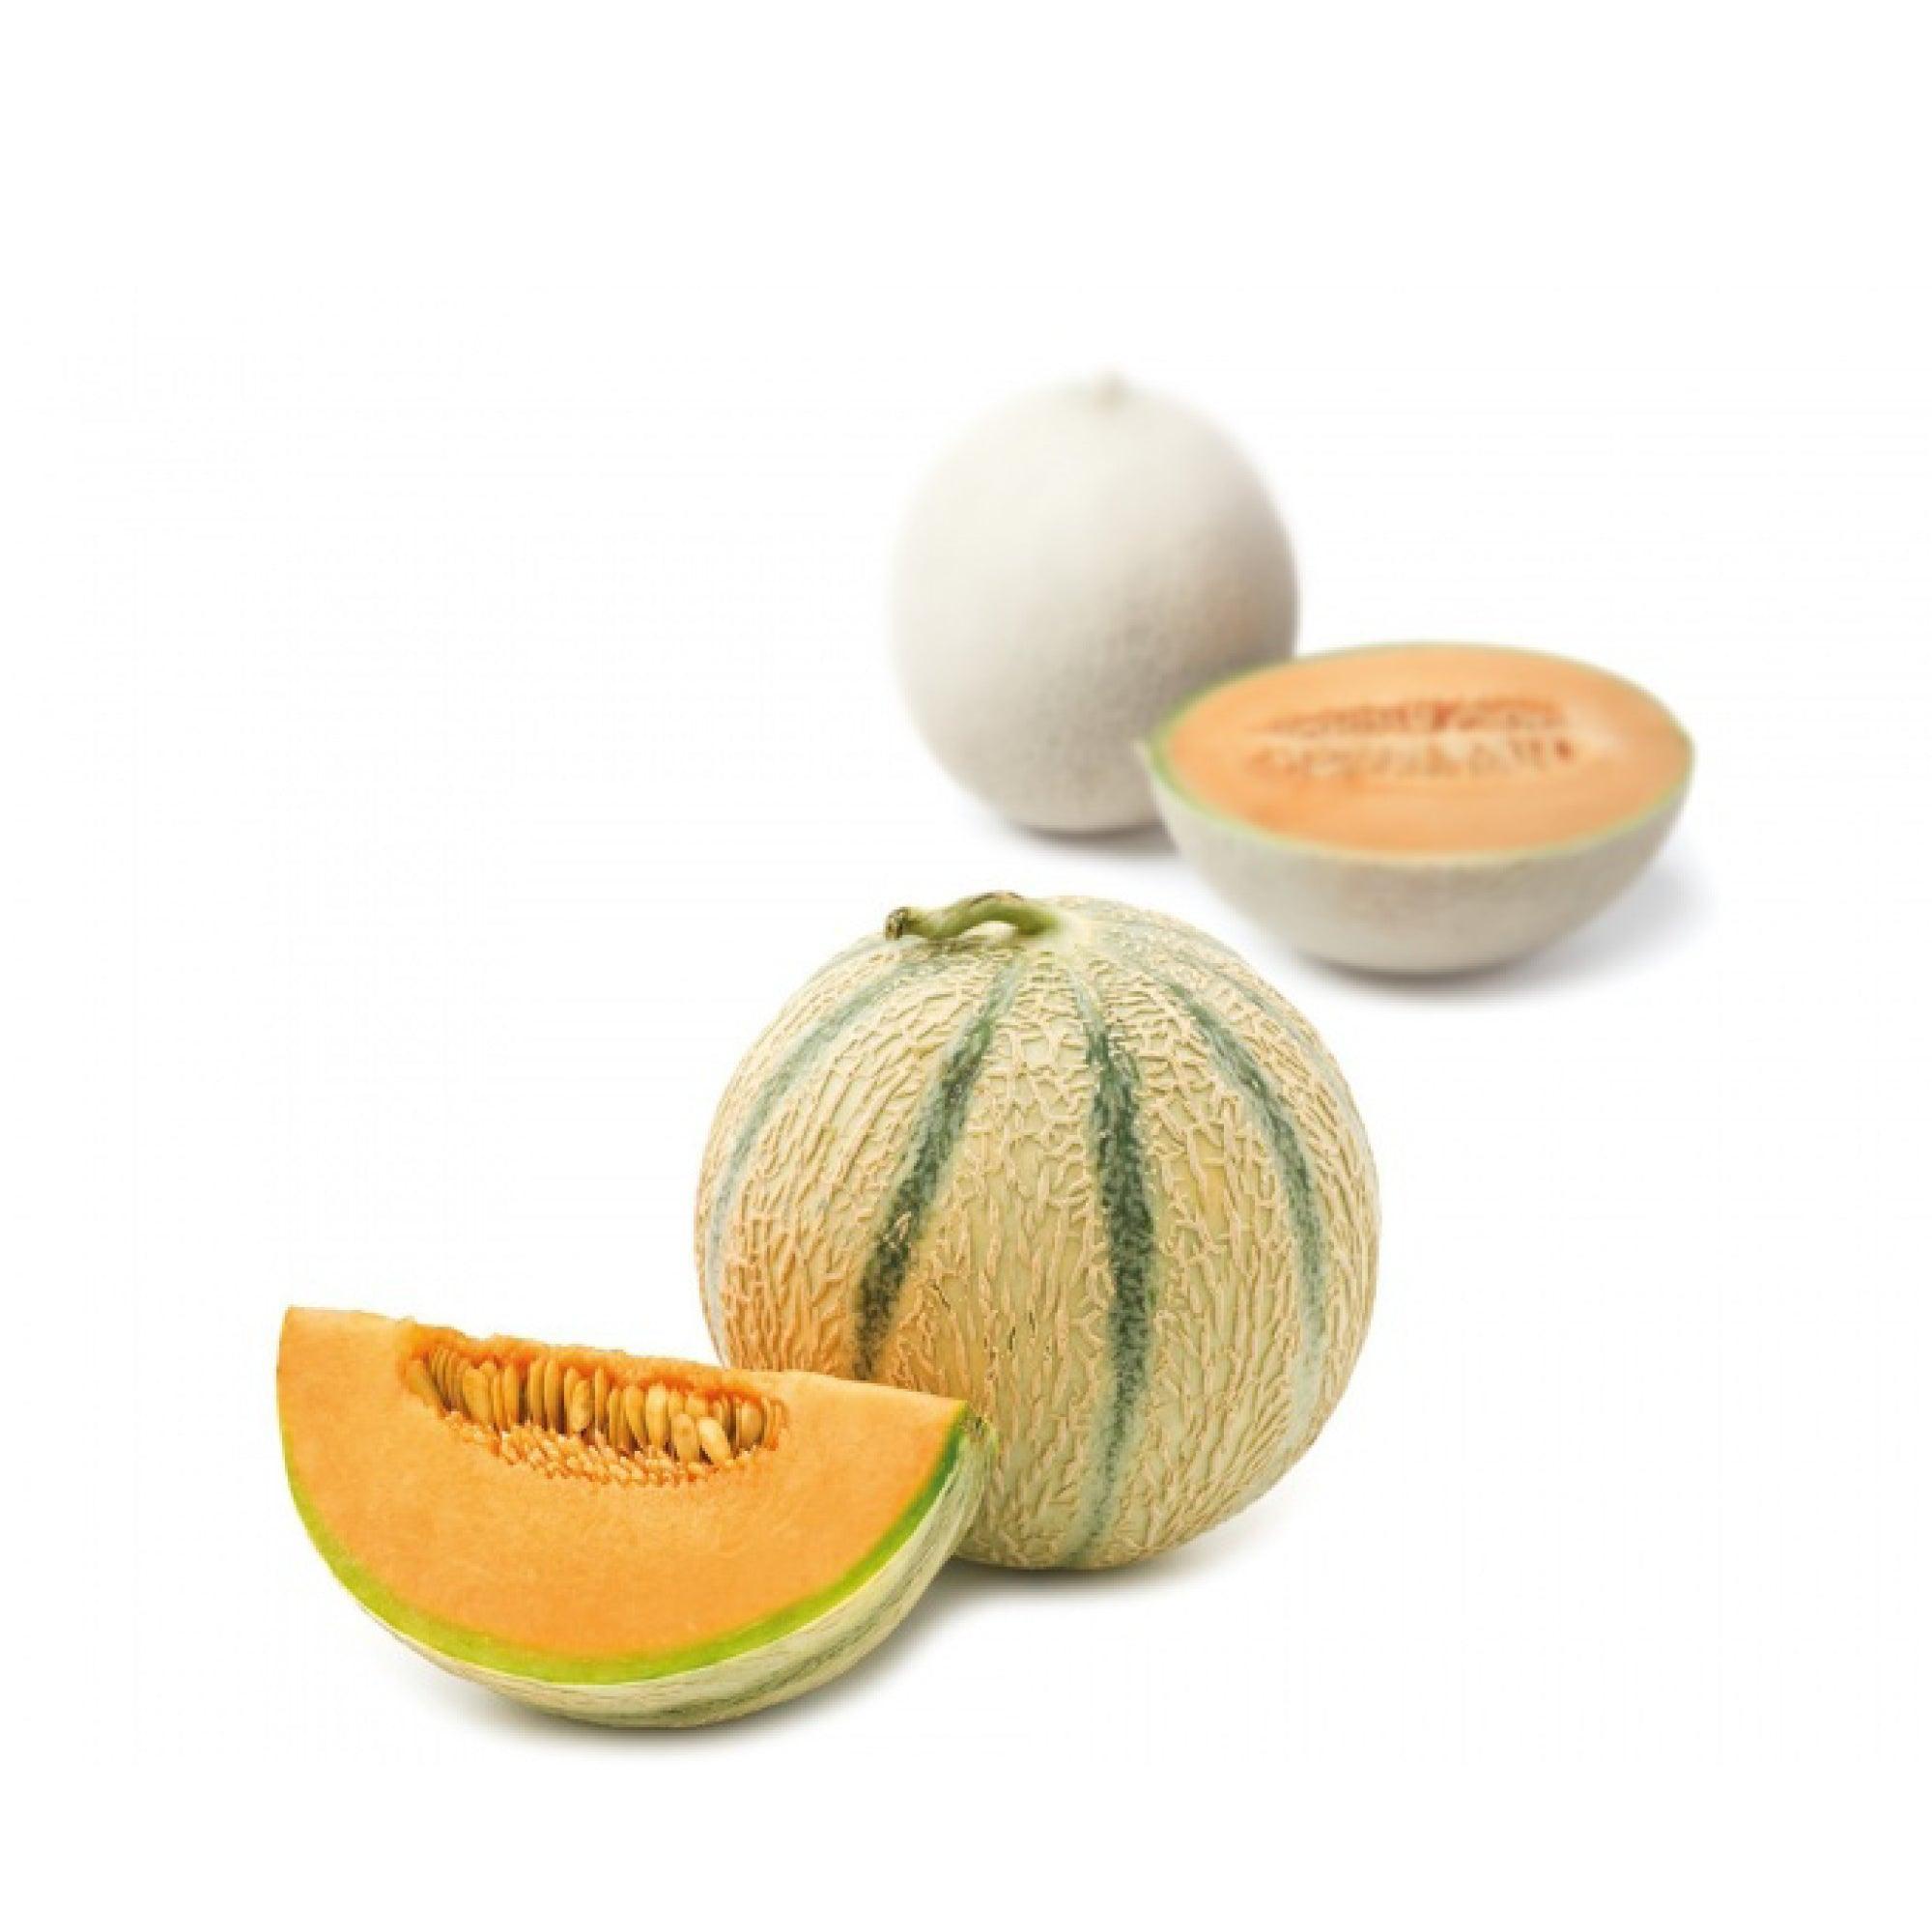 Melon Purée - Savory Gourmet